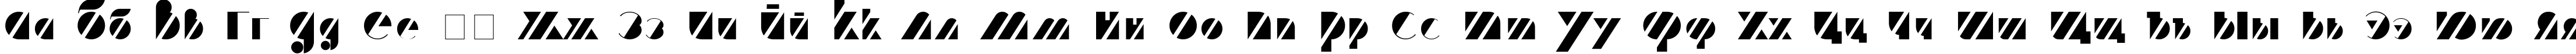 Пример написания русского алфавита шрифтом Treffi Normal